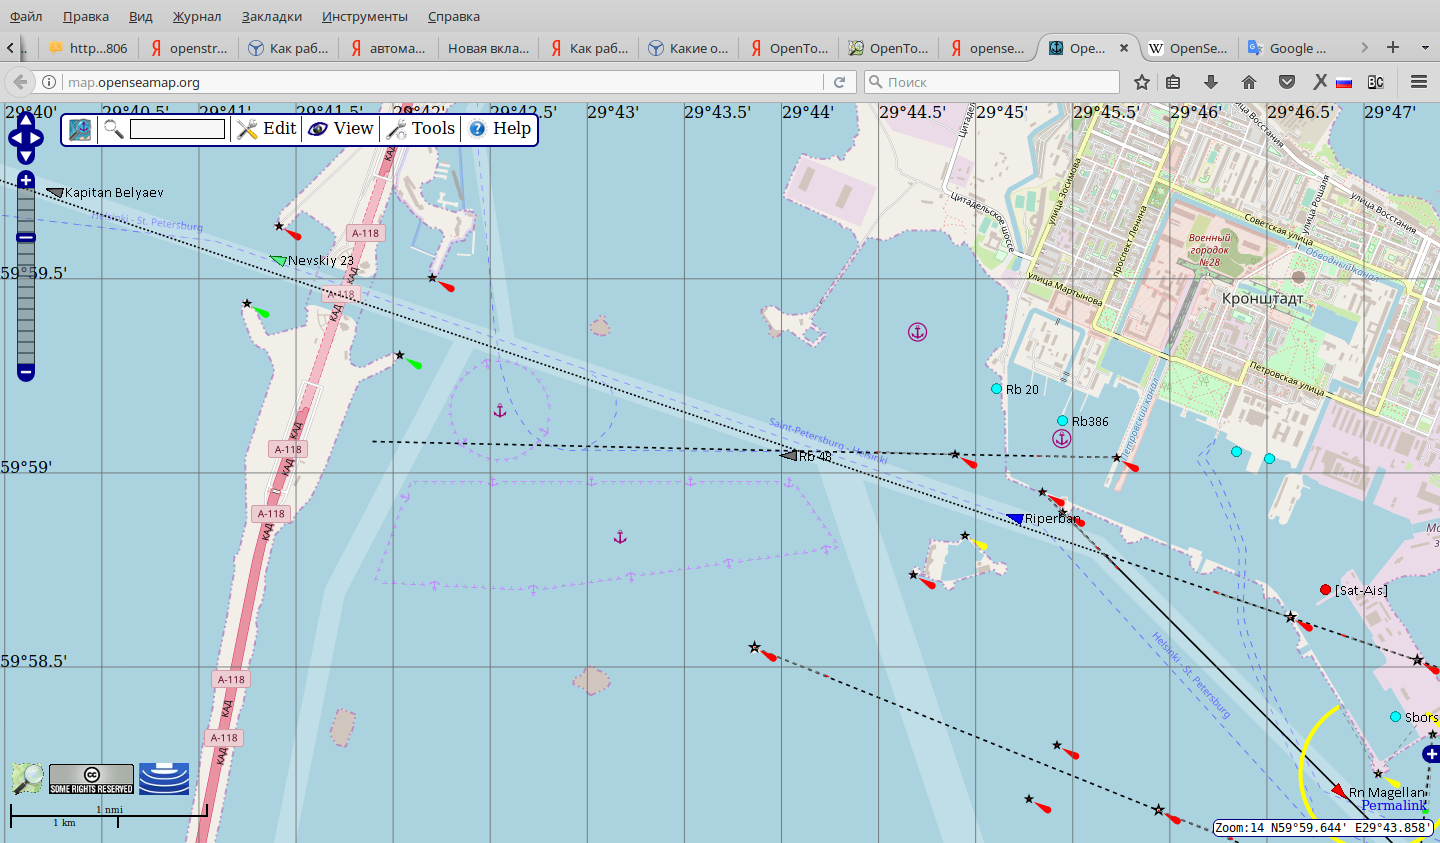 Аис карта реального времени. Определение места судна на карте. Движение кораблей по карте в реальном времени.